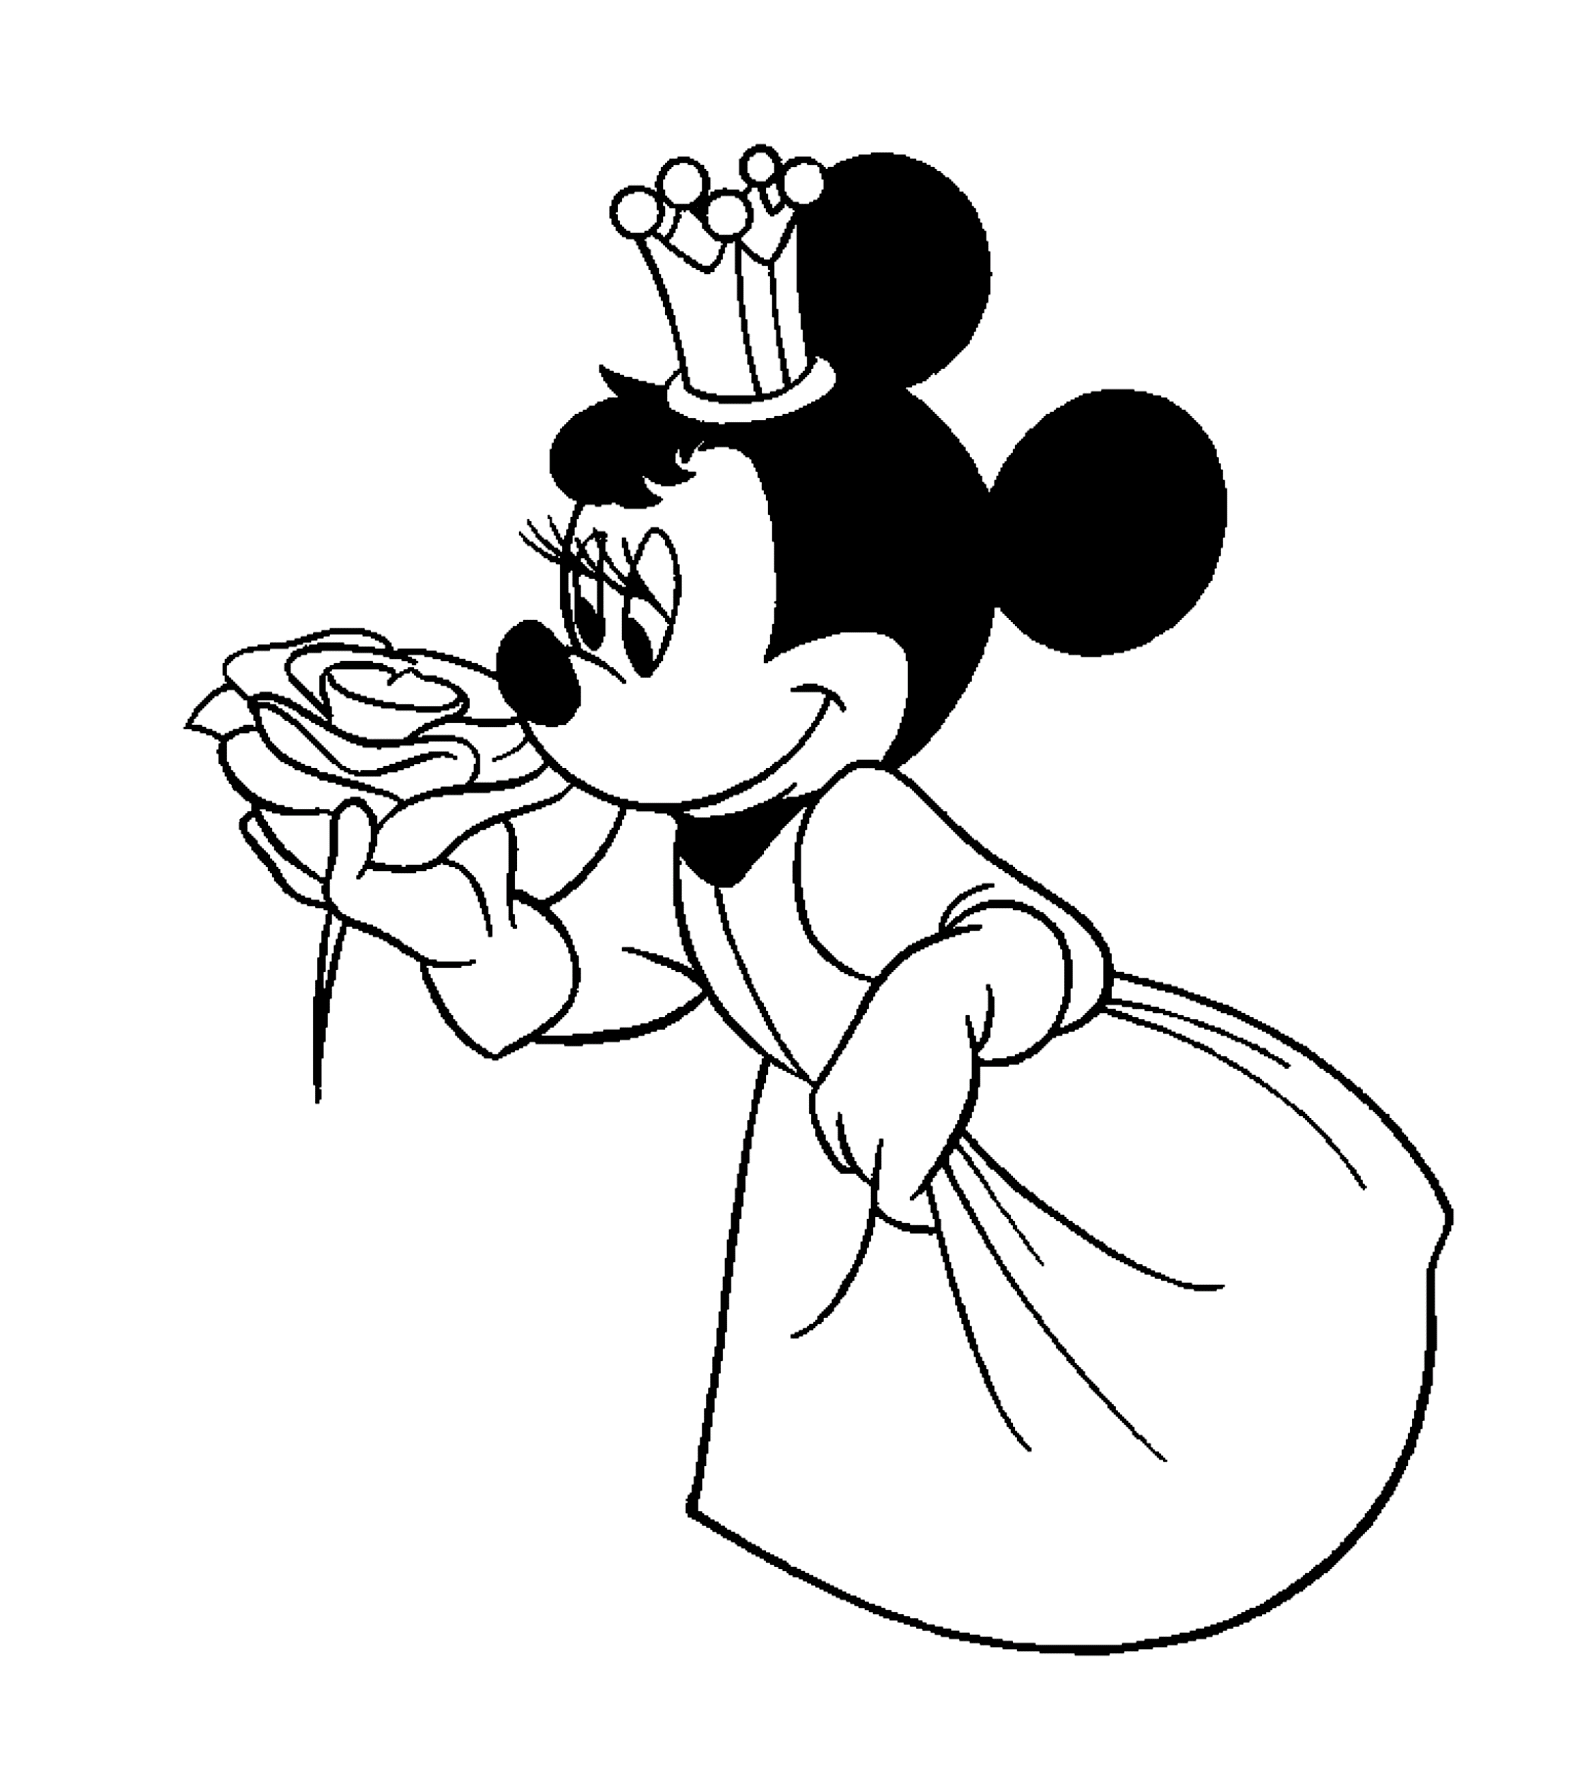 Minnie la princesse - Coloriage Minnie - Coloriages pour enfants